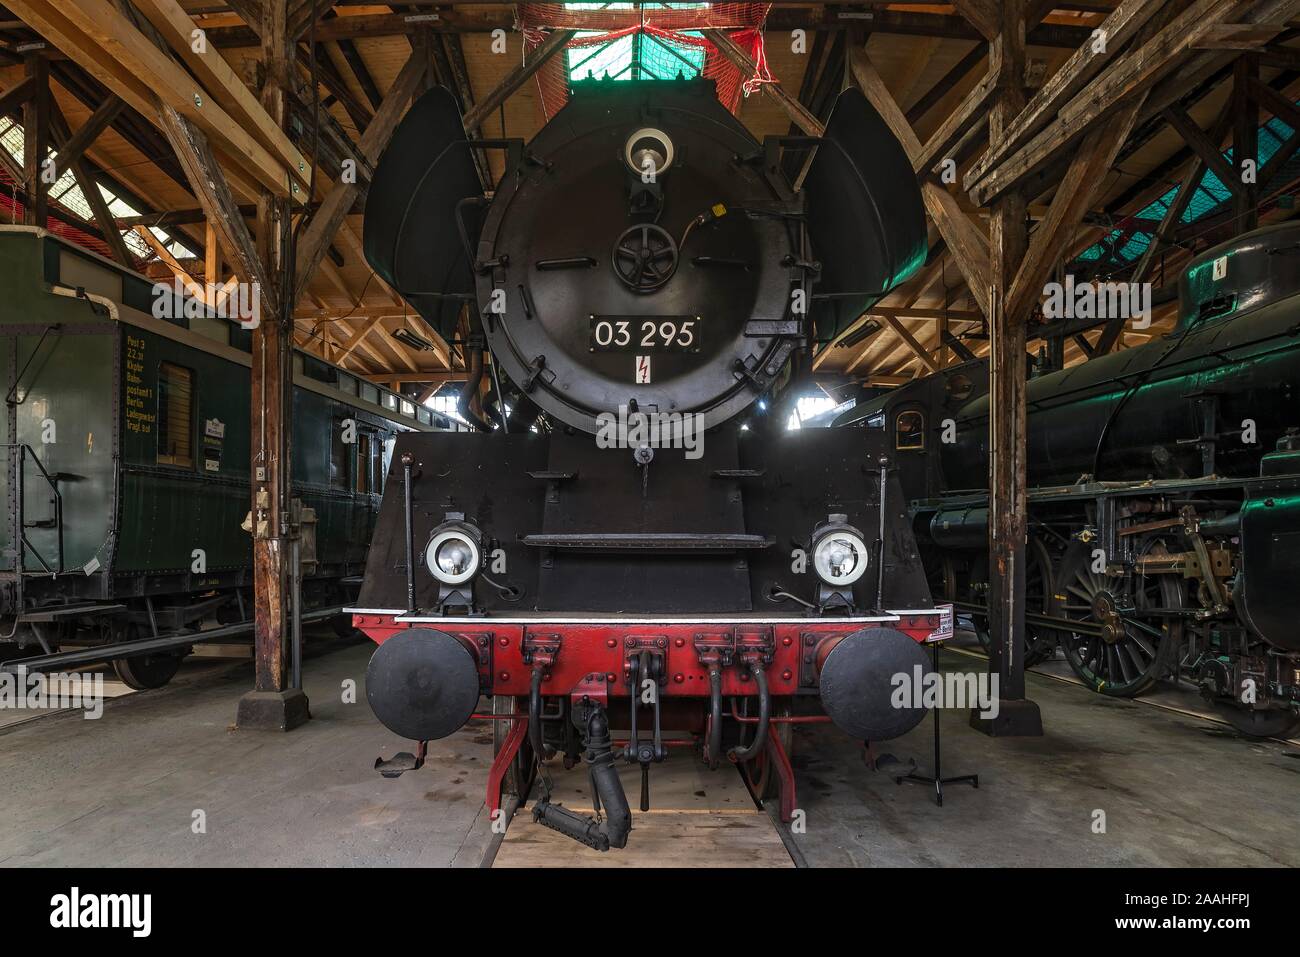 Express locomotive vapeur 03295, année de construction 1937, 2005, l'Europe dans le parc ferroviaire, Augsburg, souabe, Bavière, Allemagne Banque D'Images